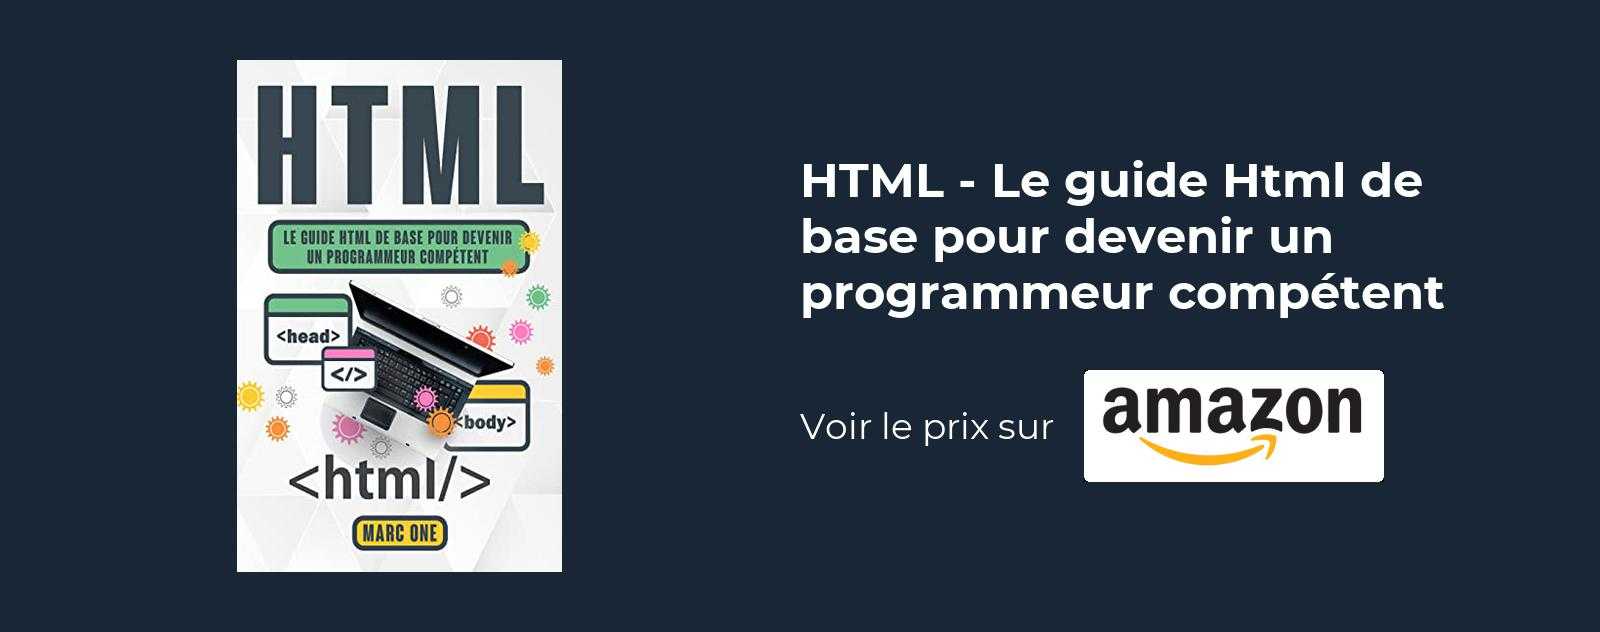 HTML - Le guide Html de base pour devenir un programmeur competent